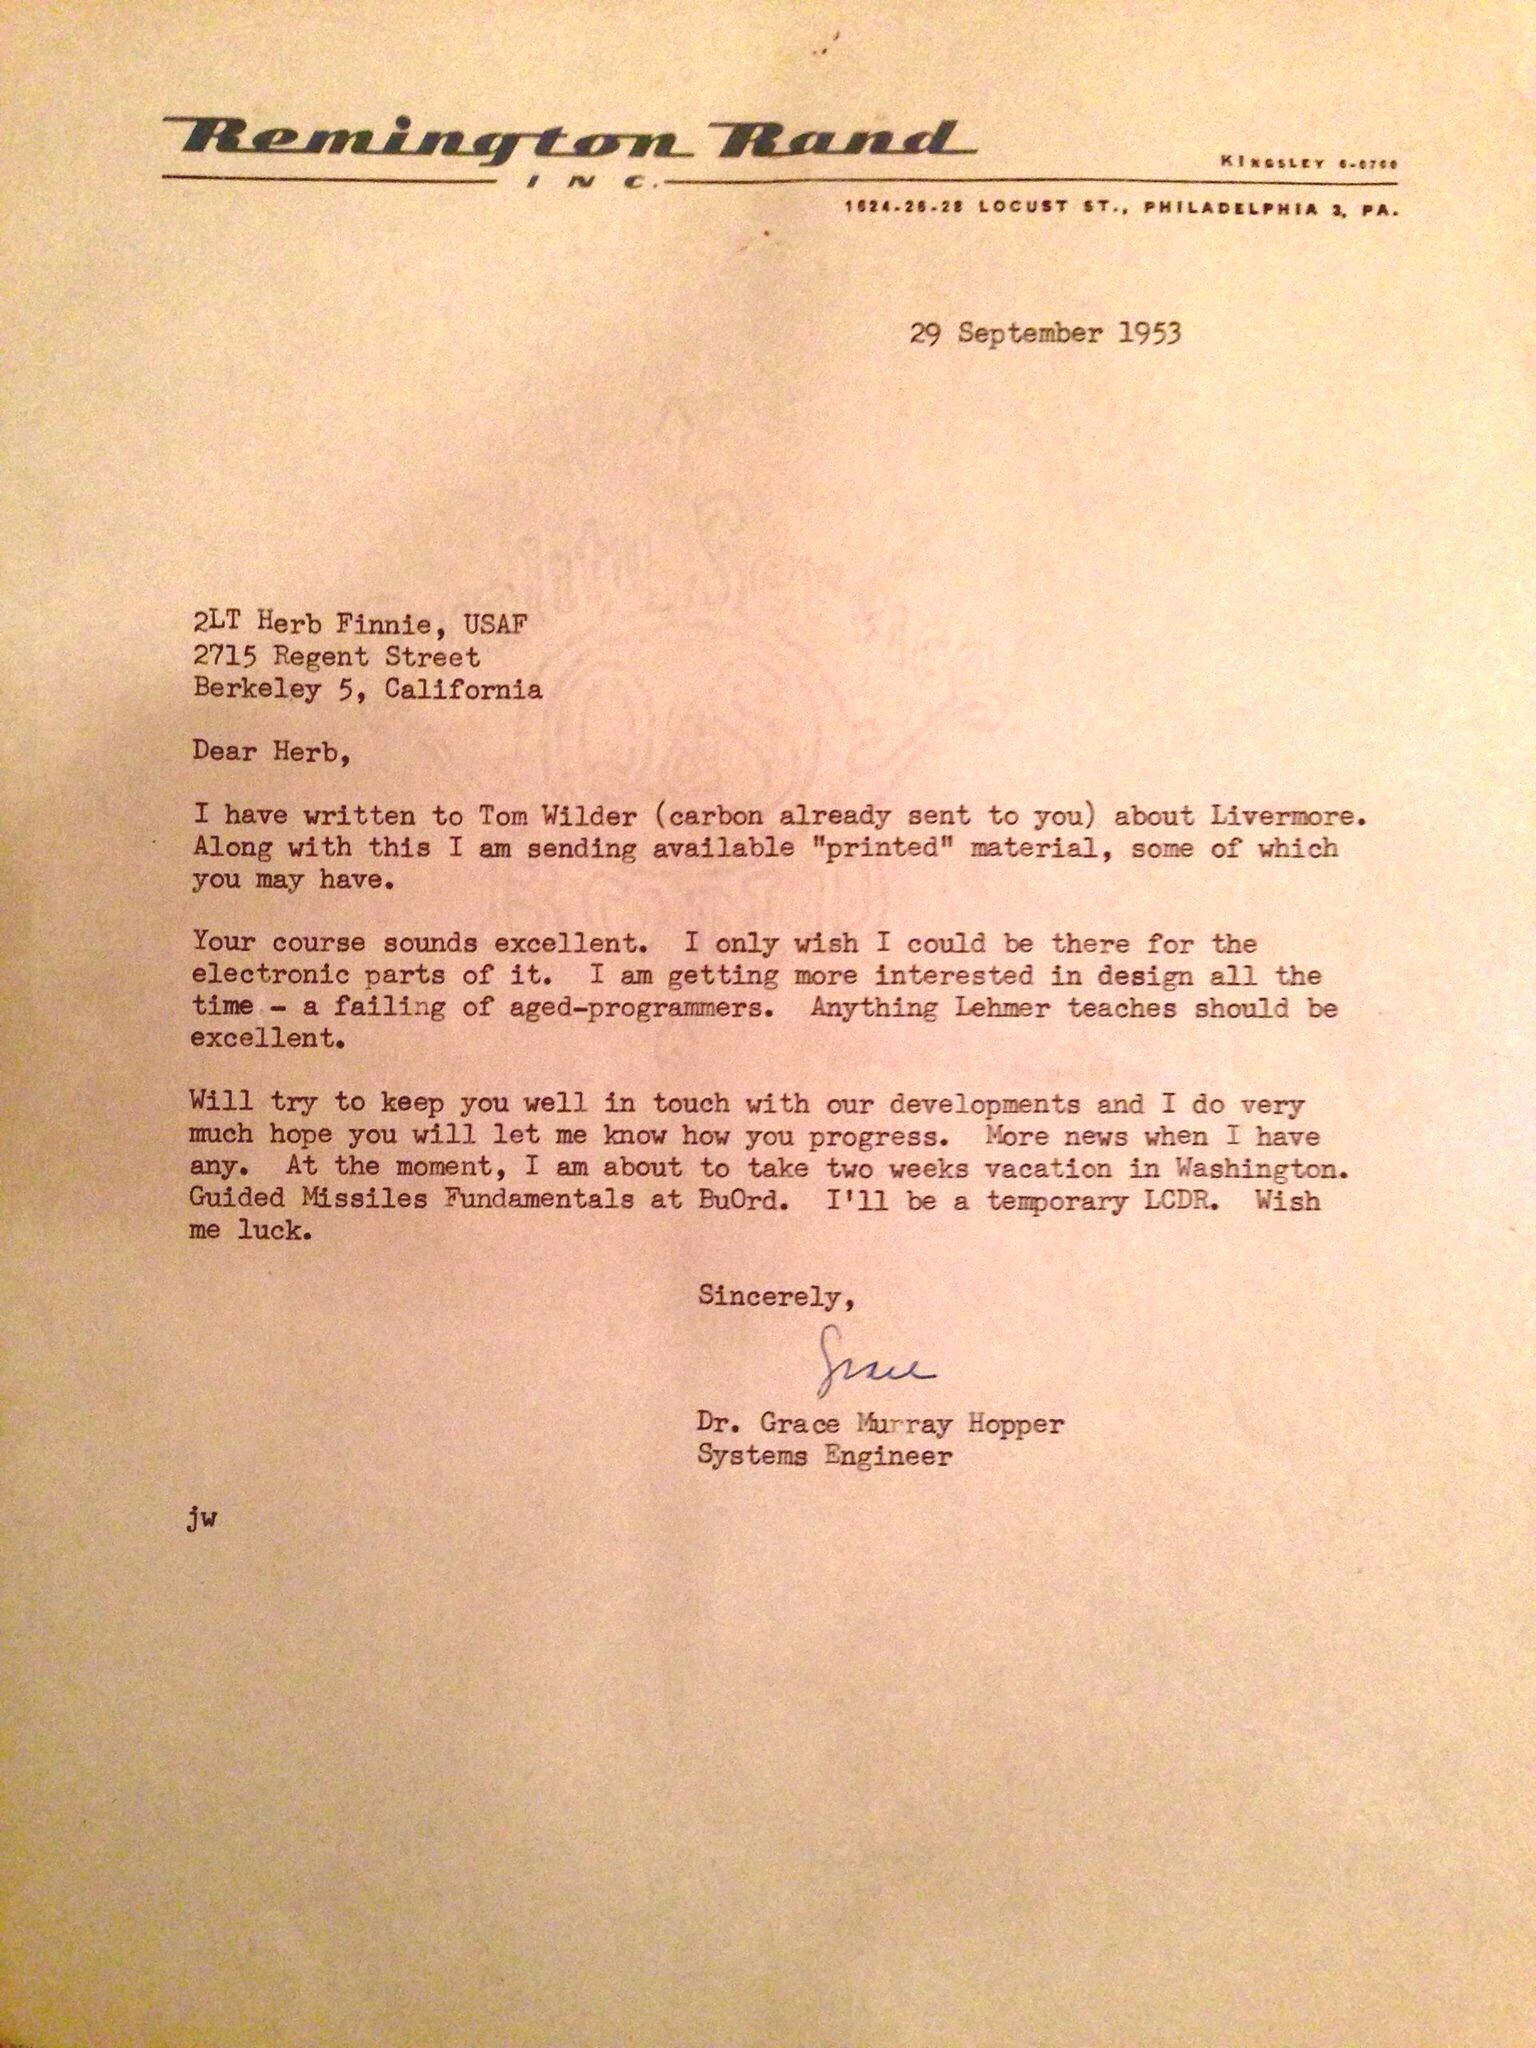 Grace Hopper letter